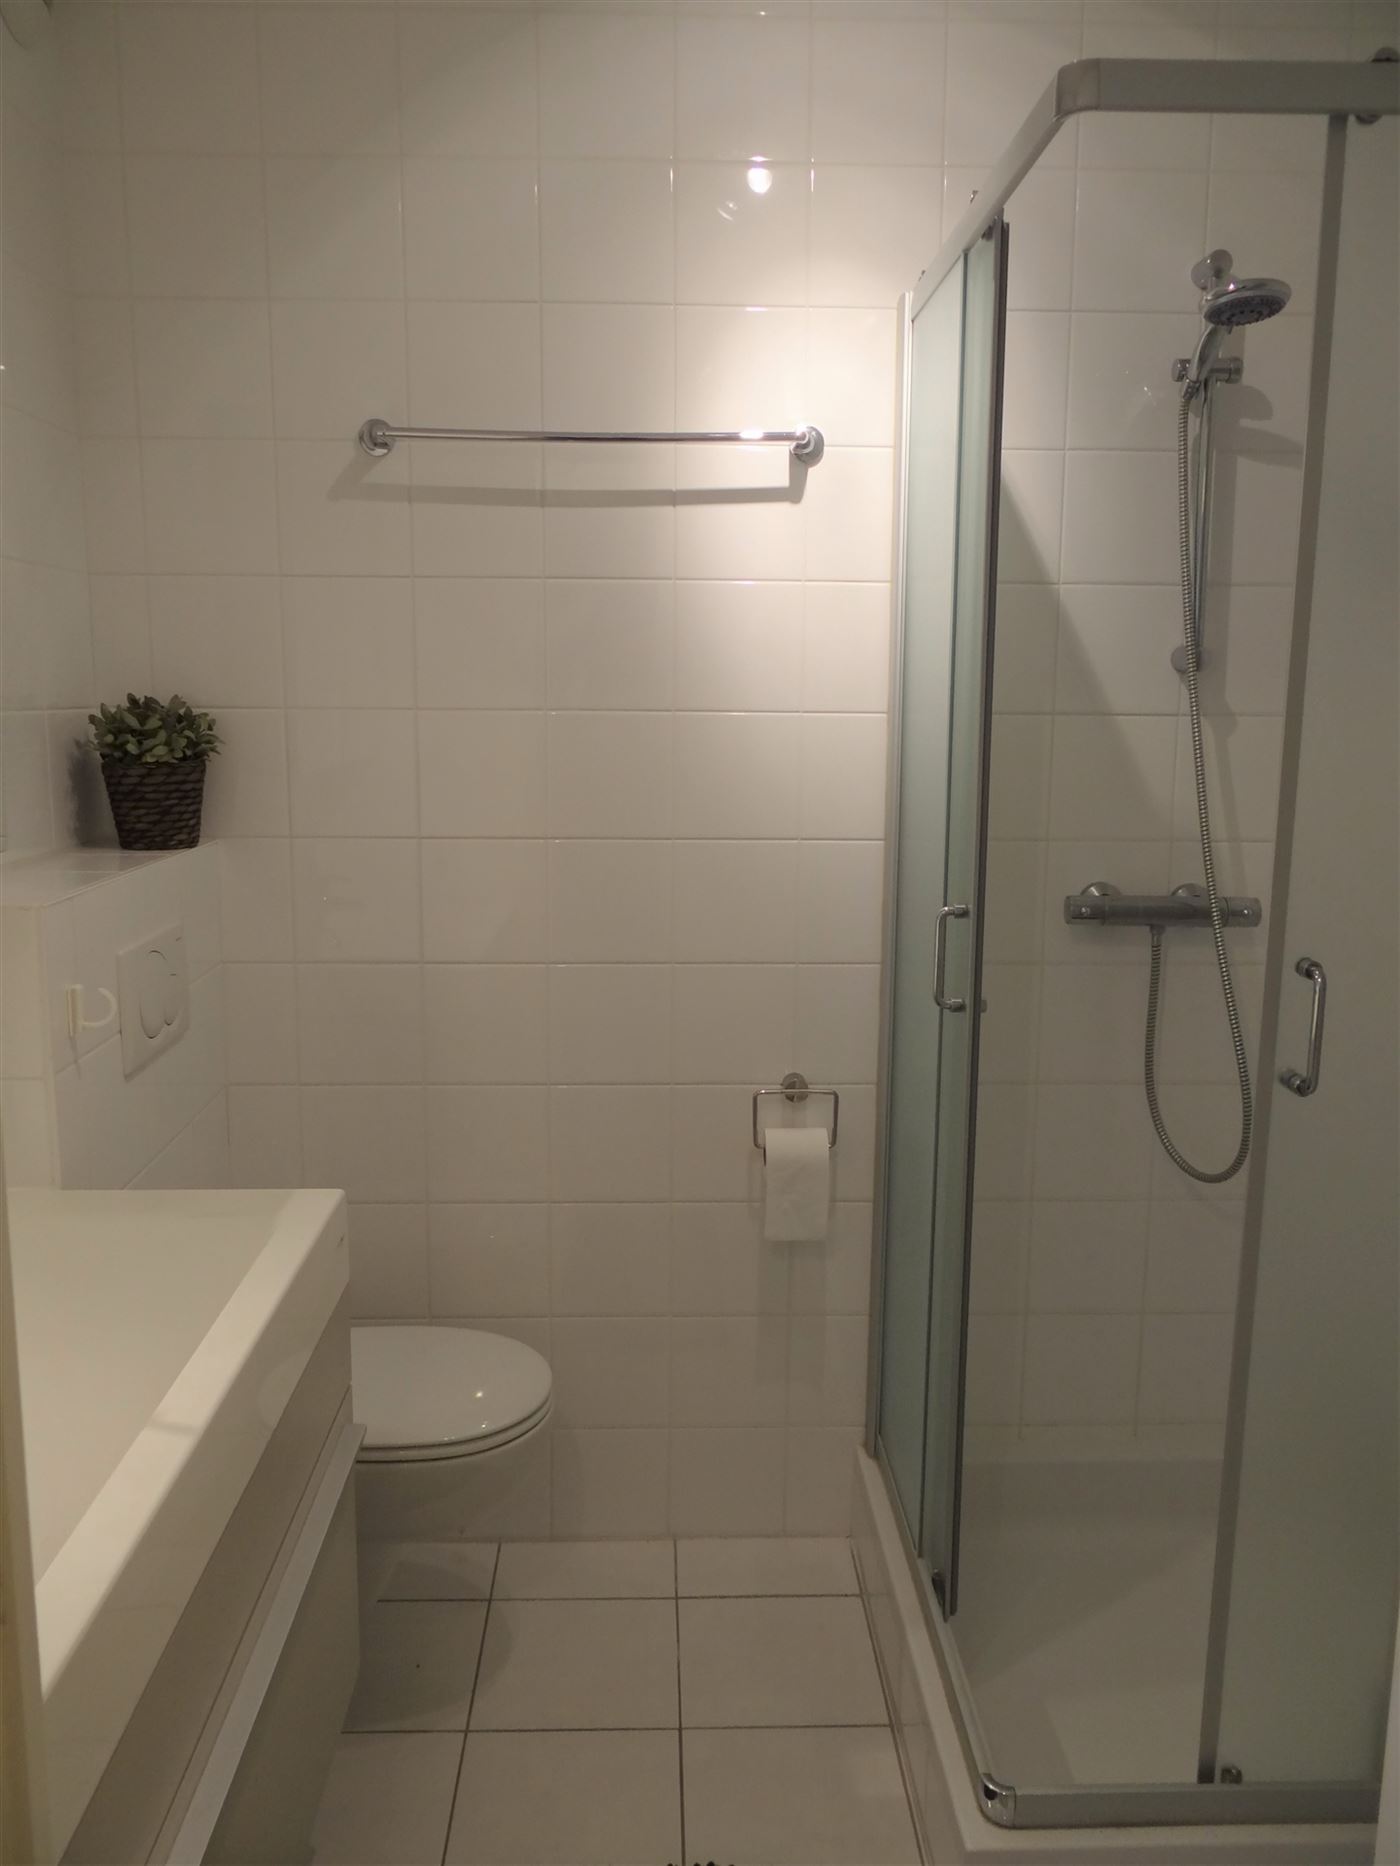 TE HUUR OP JAARBASIS -  Gezellig modern gemeubeld appartement - dicht bij openbaar vervoer - woonkamer met ingerichte keuken - badkamer met douche - s...